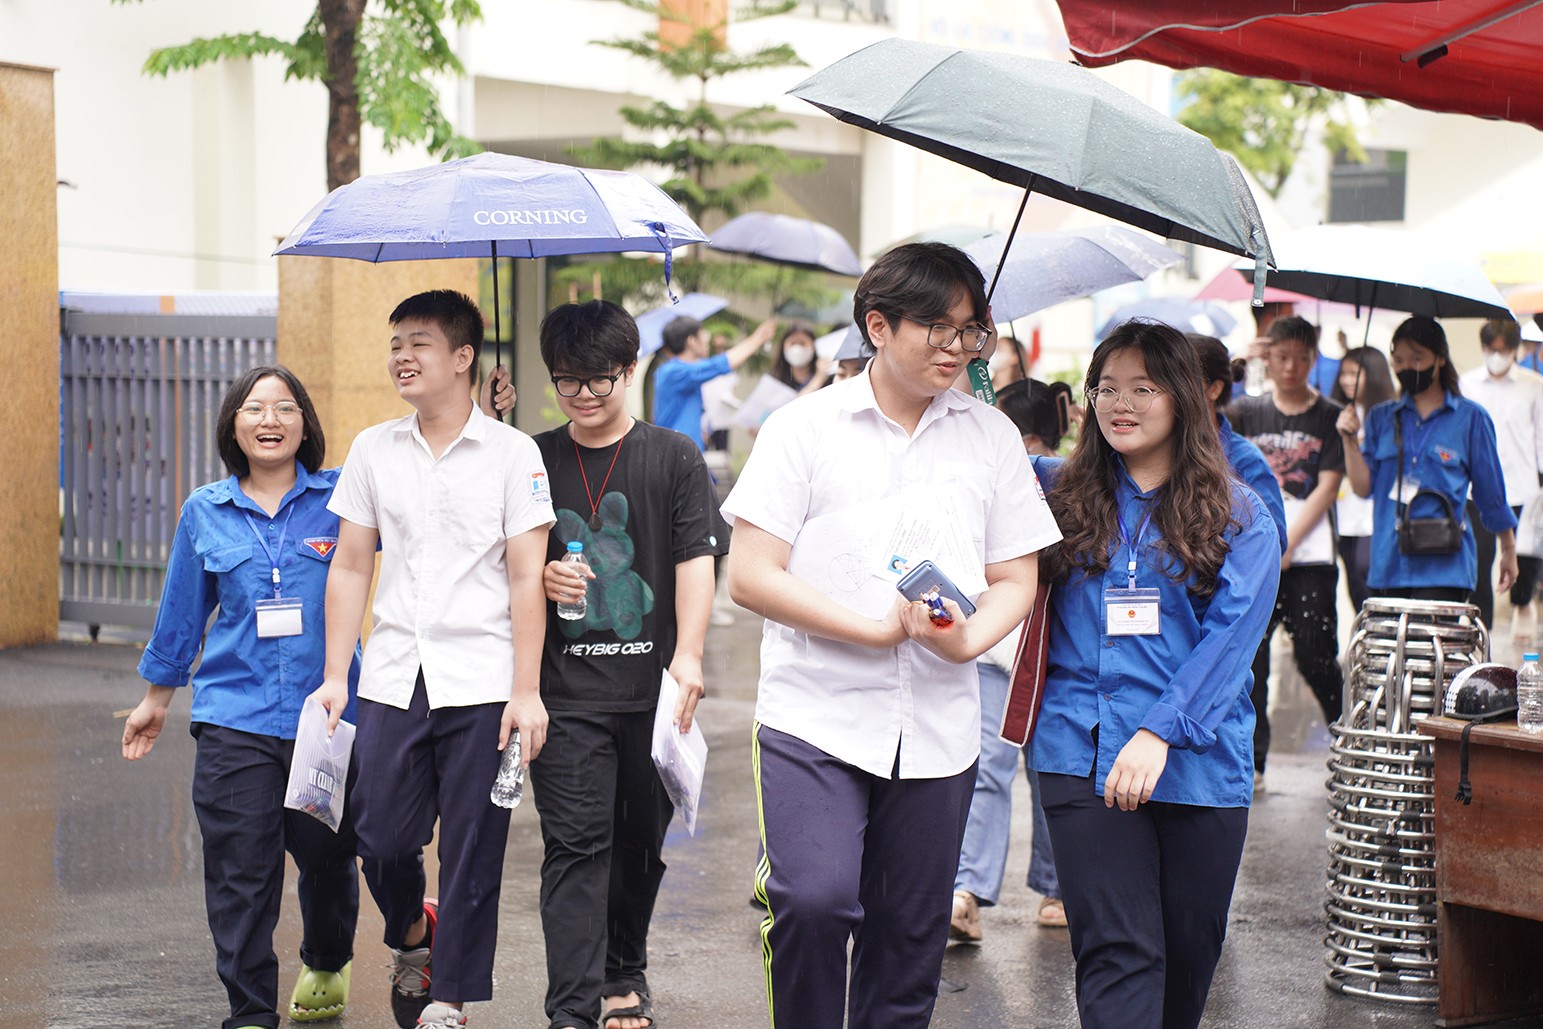 Thời tiết trong buổi thi cuối cùng có mưa nhẹ nên lực lượng thanh niên tình nguyện đã nhanh chóng có mặt hỗ trợ các em